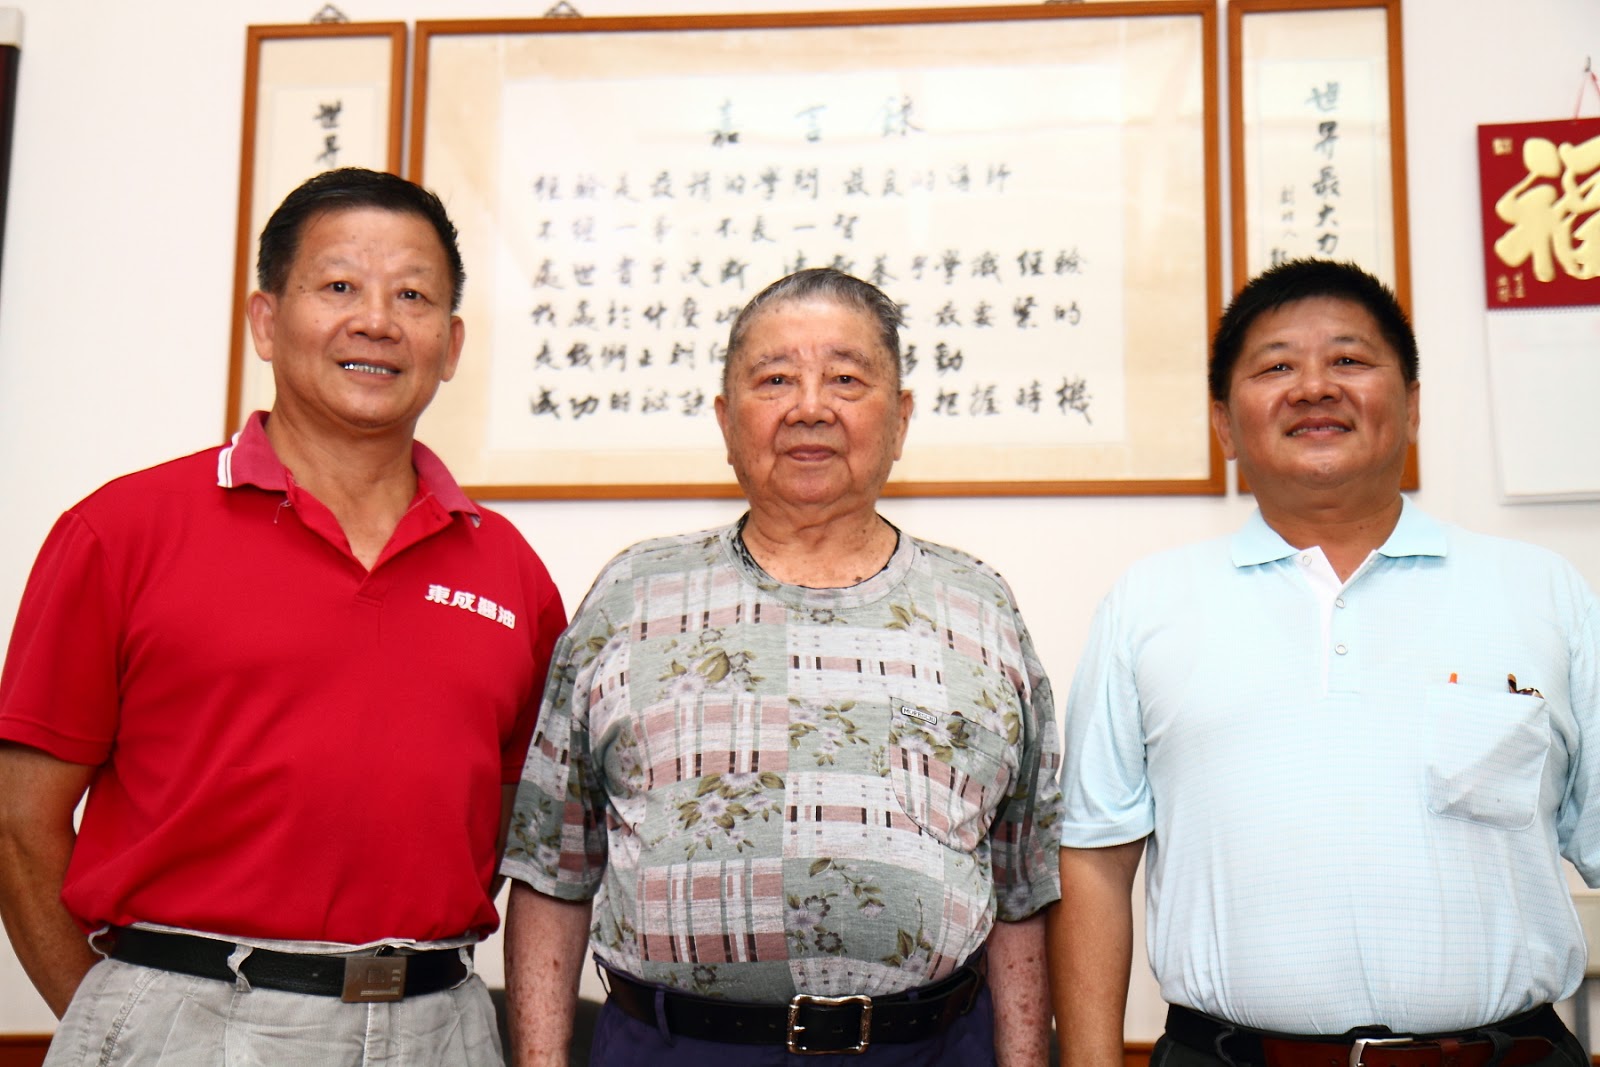 創始人鄭登奇(中)與二代經營管理人鄭旭峰(左)、鄭堯天(右)分別掌管行銷業務與研發生產